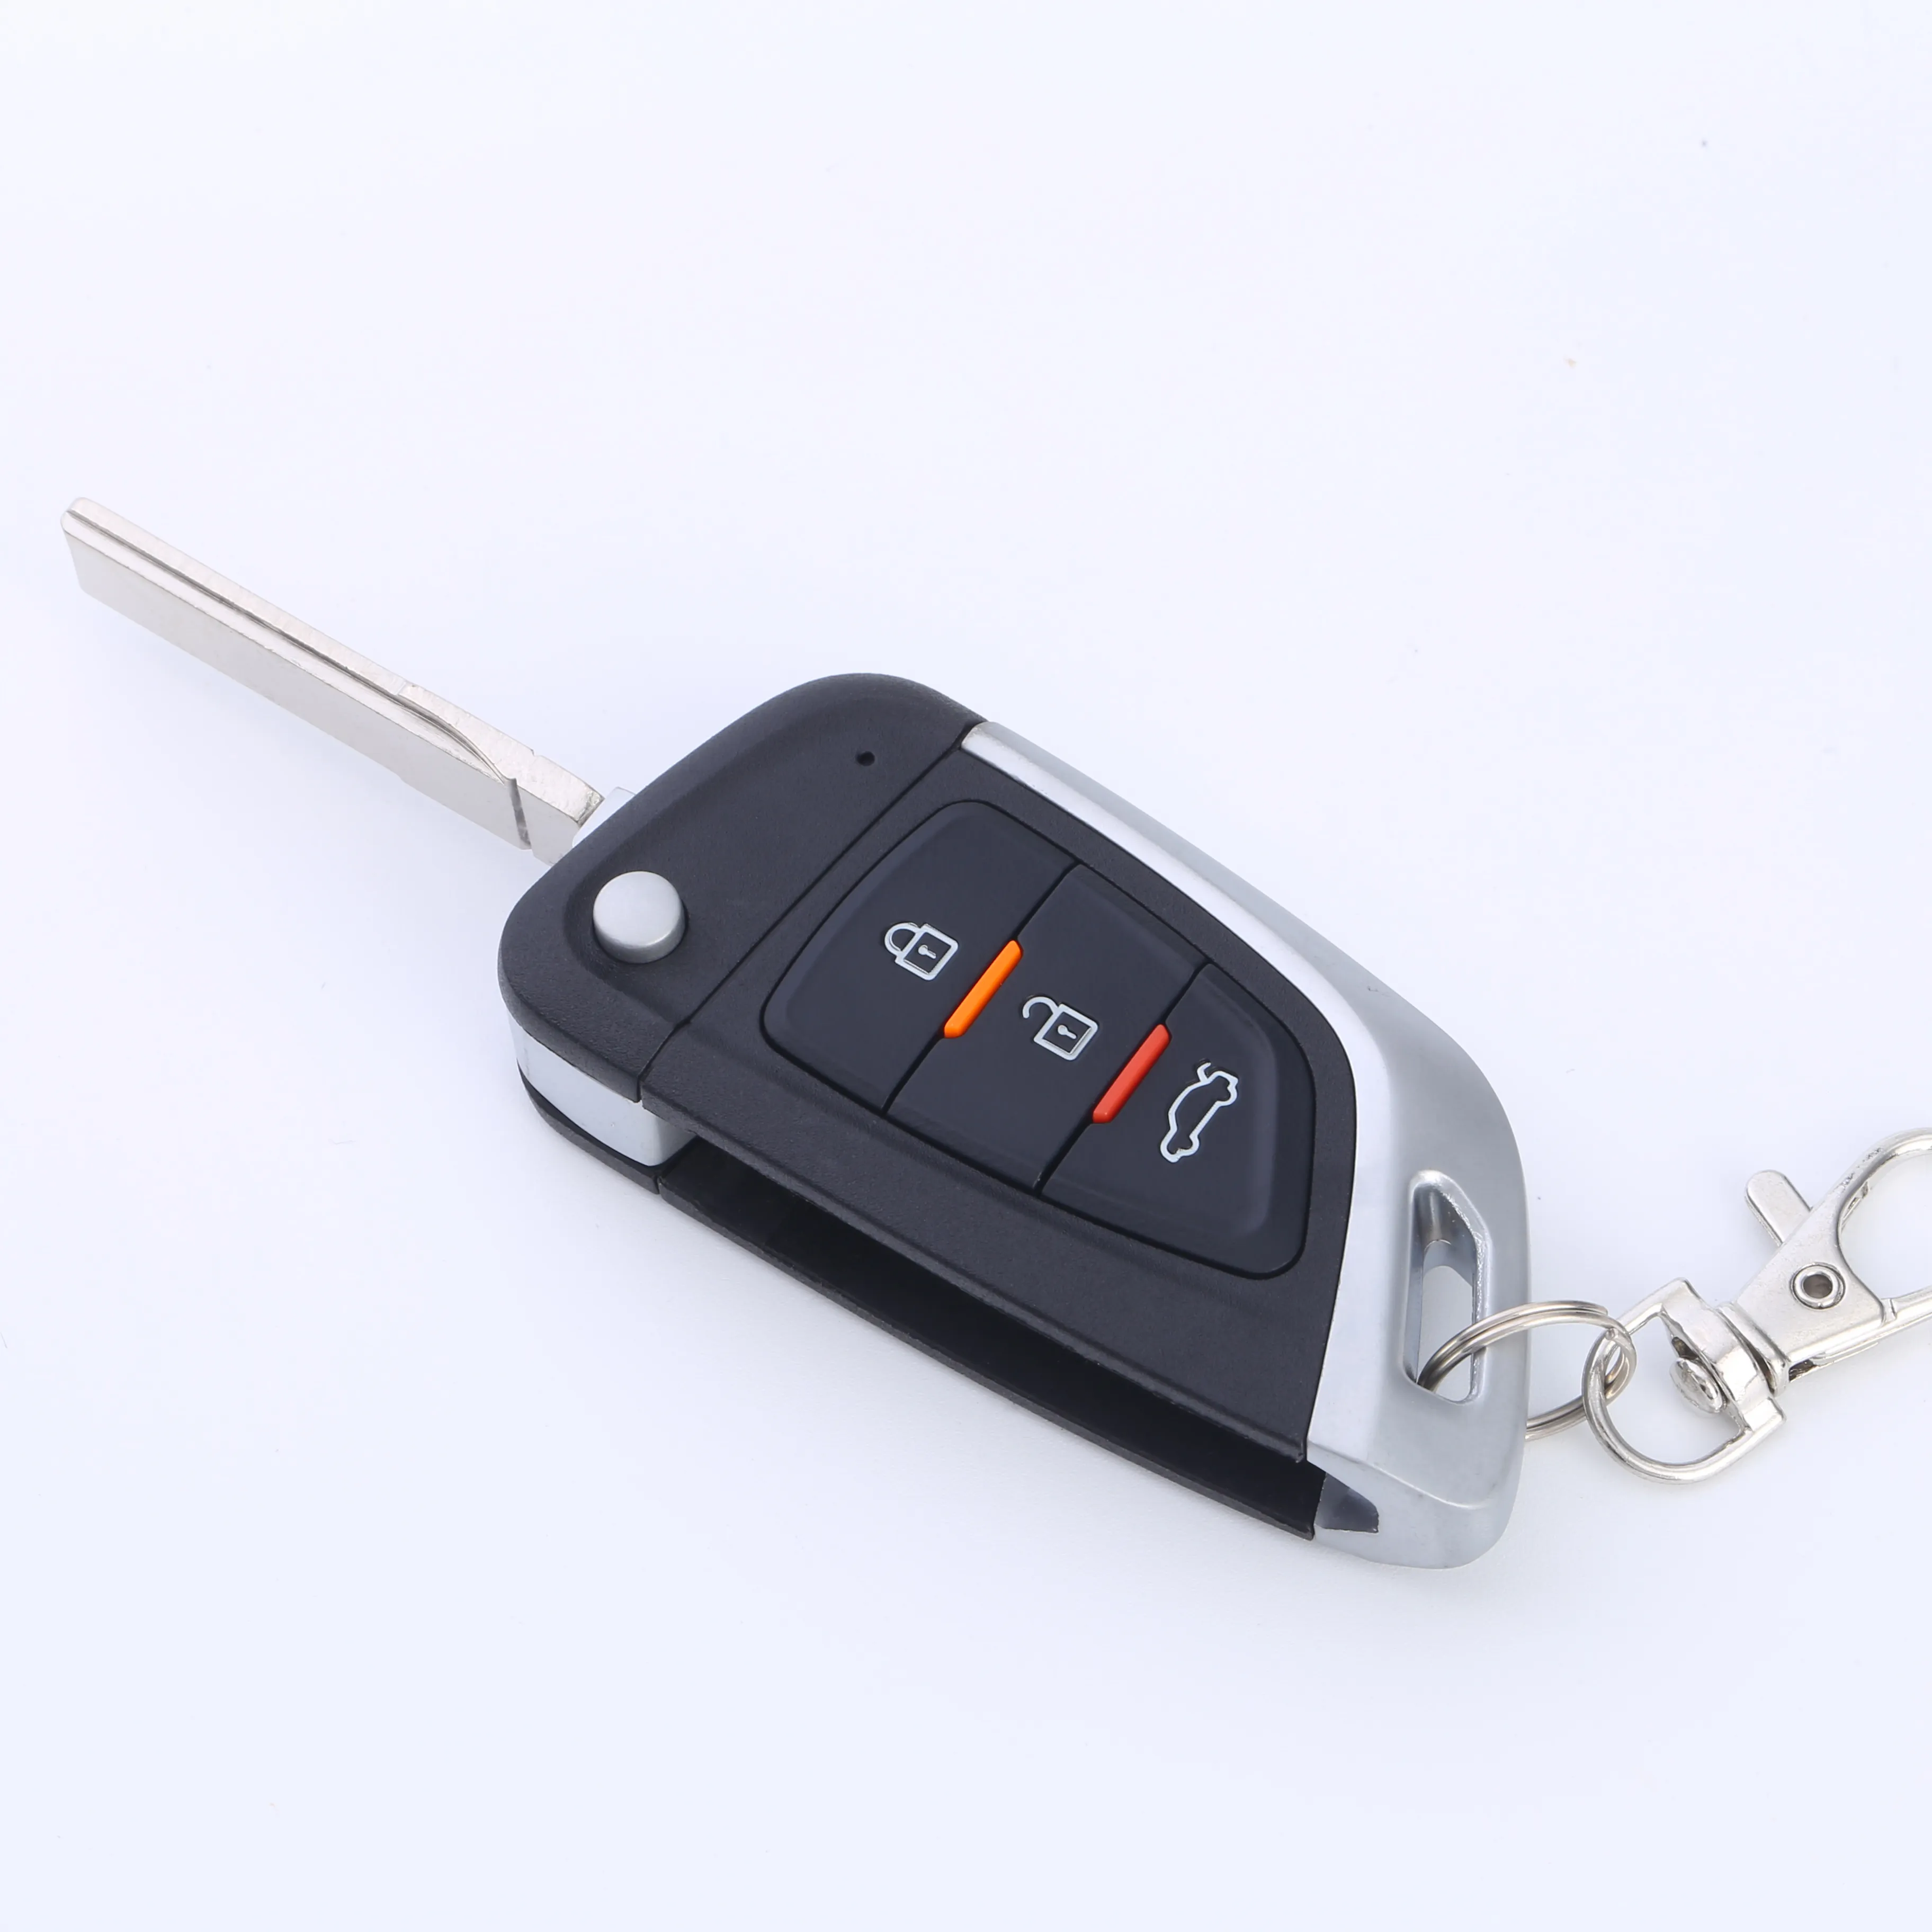 Car Remote Control / Car Alarm System